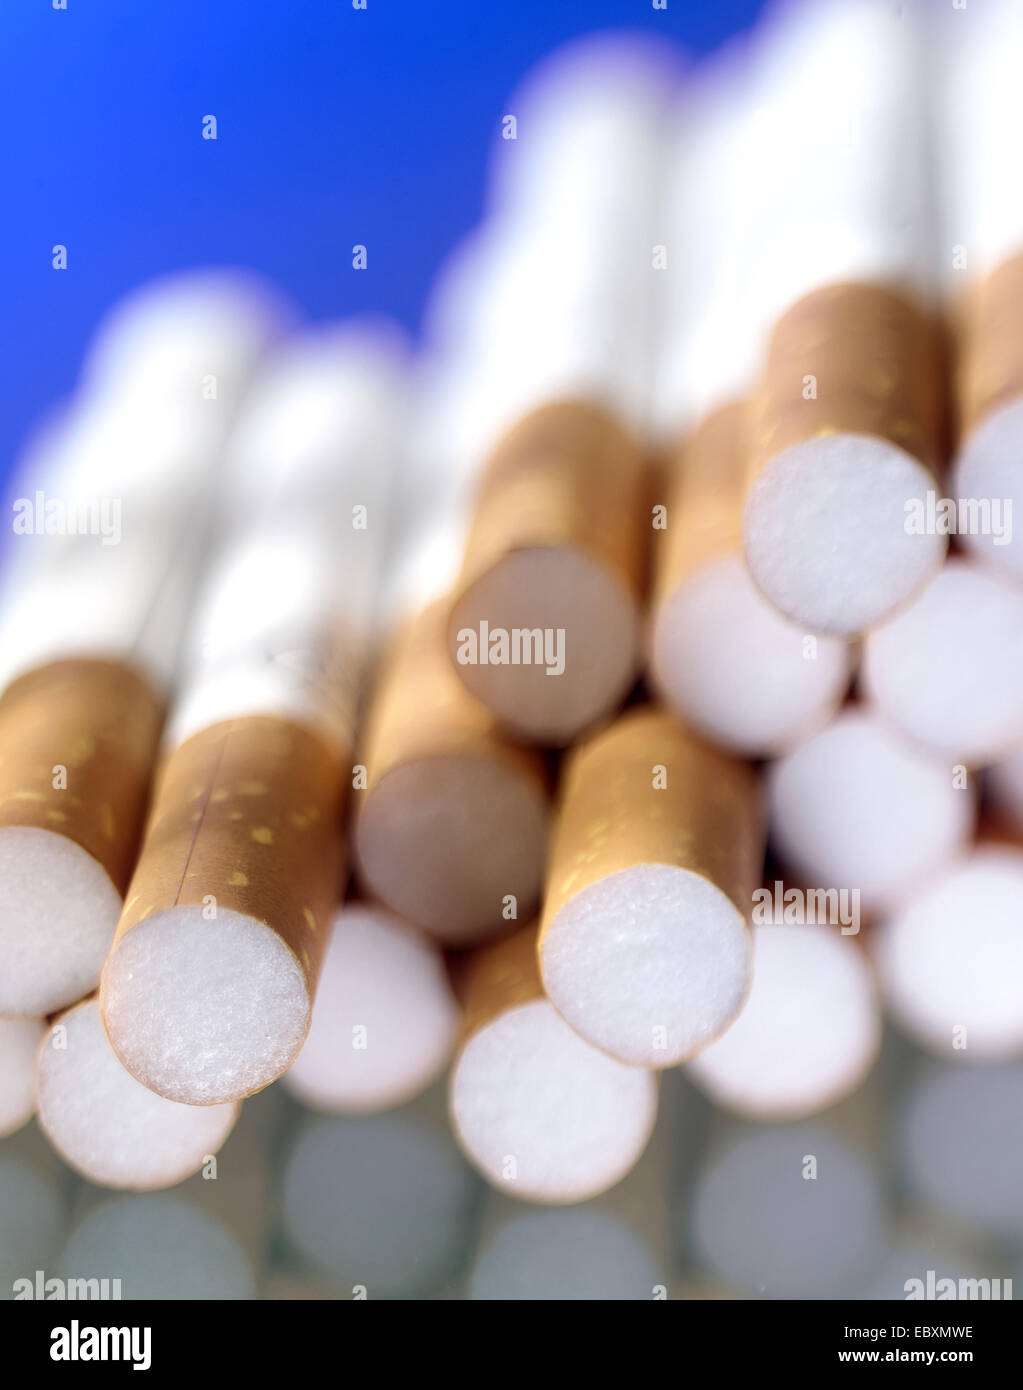 Le sigarette con filtro, nicotin Foto Stock